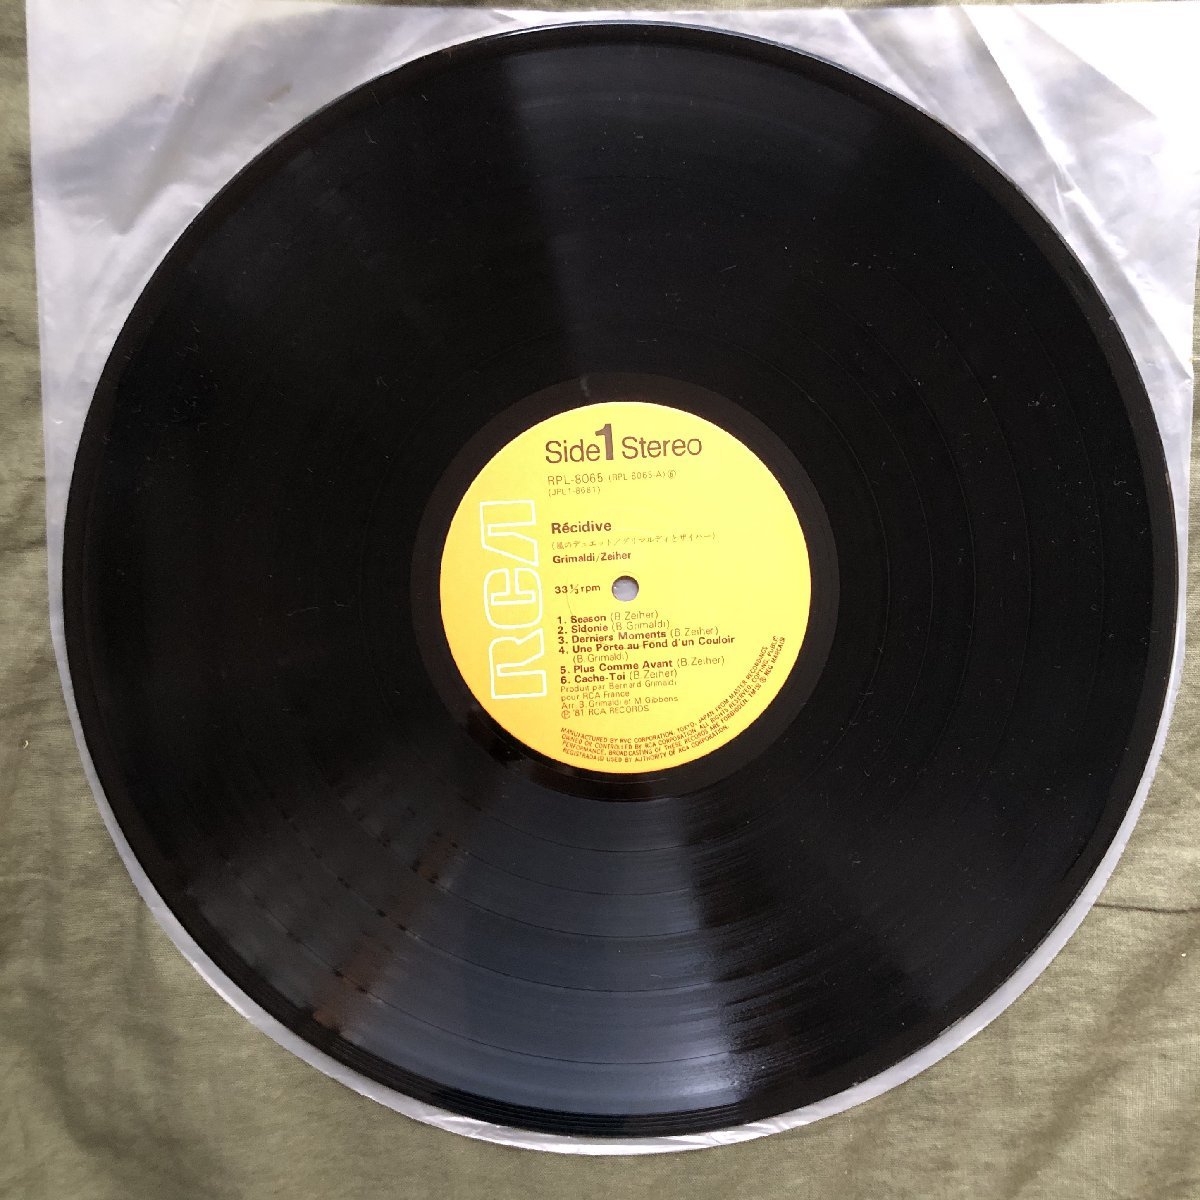 傷なし美盤 美ジャケ 激レア ほぼ新品 1981年 国内初盤 グリマルディとザイハー LPレコード 風のデュエット Recidive 帯付 Steve Lukather_画像9